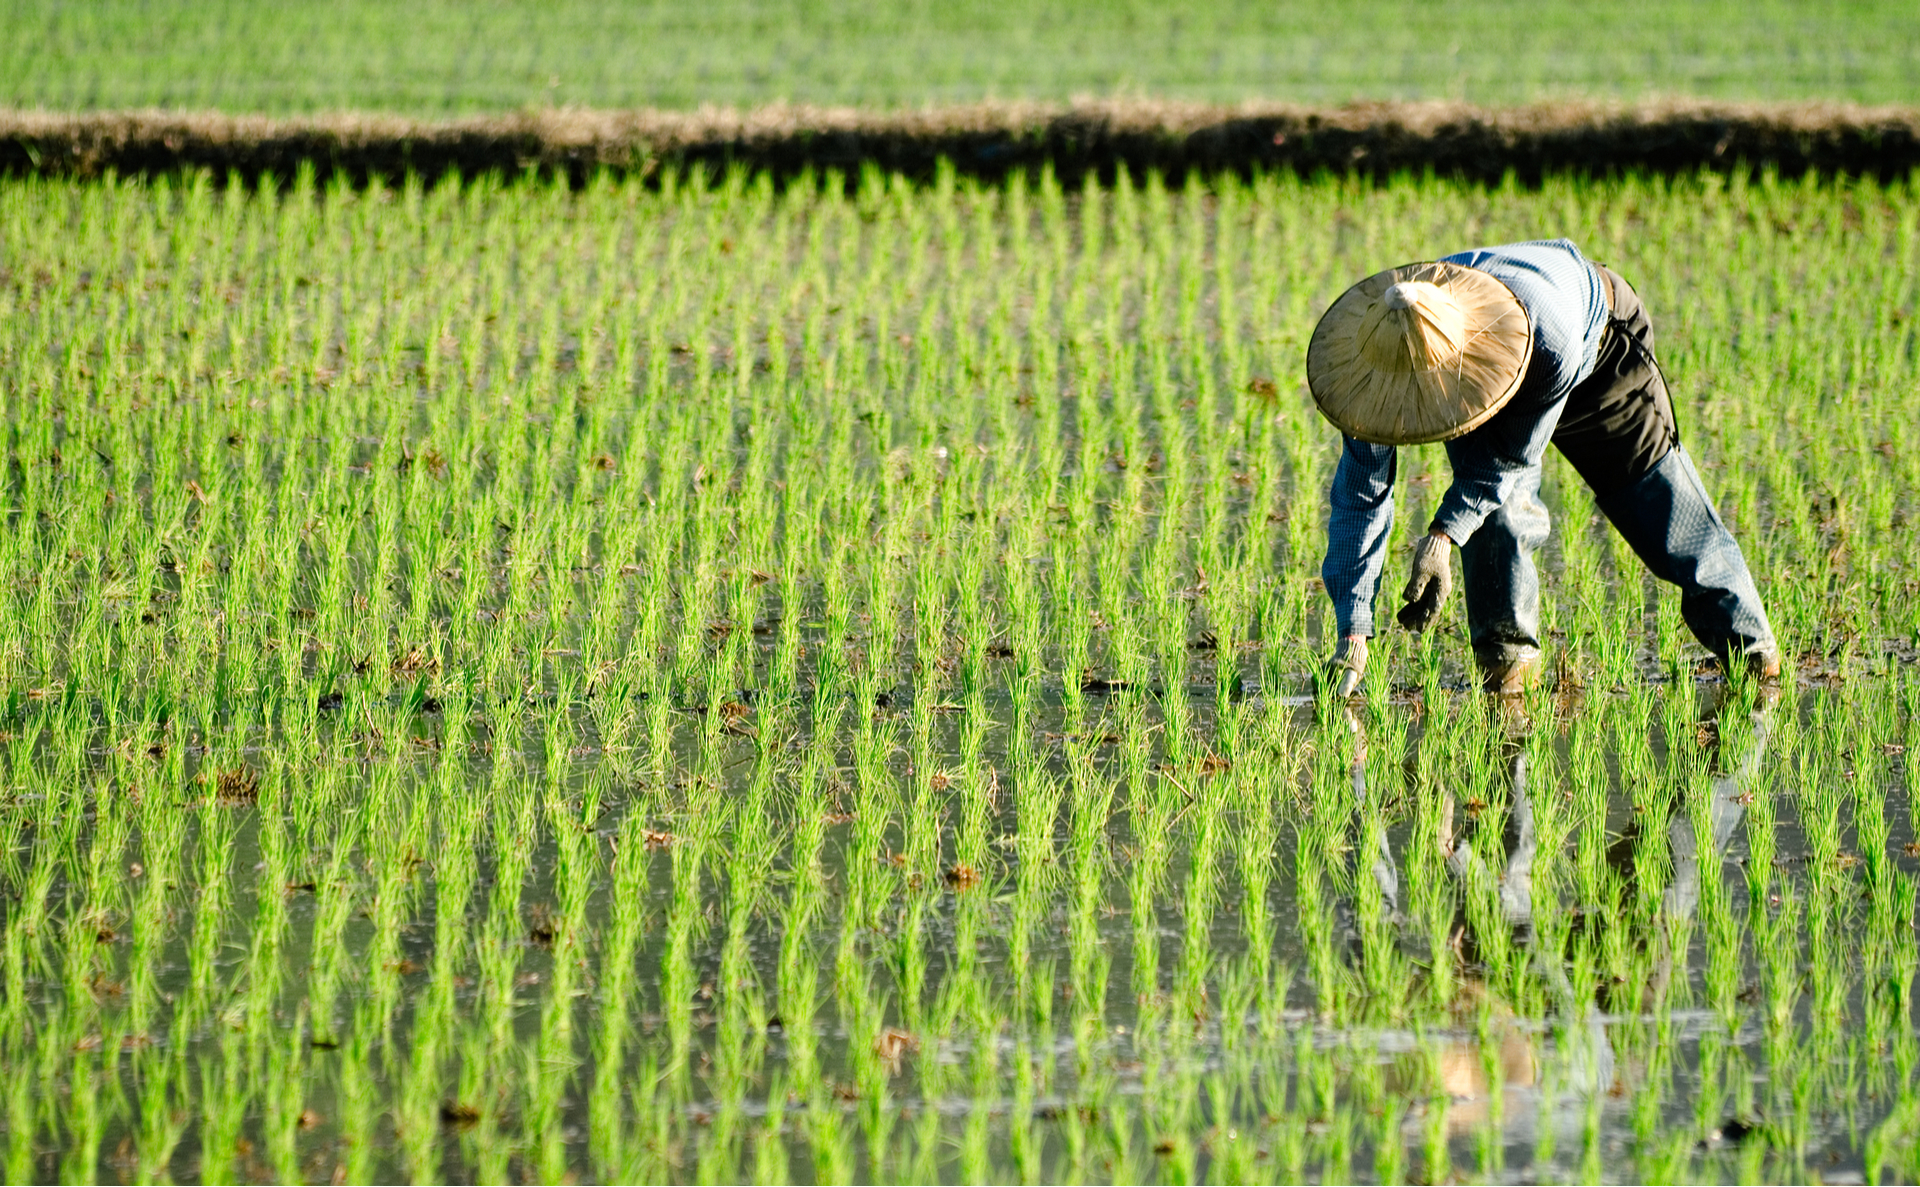 A farmer wearing a hat is bending down in a field of green crops.